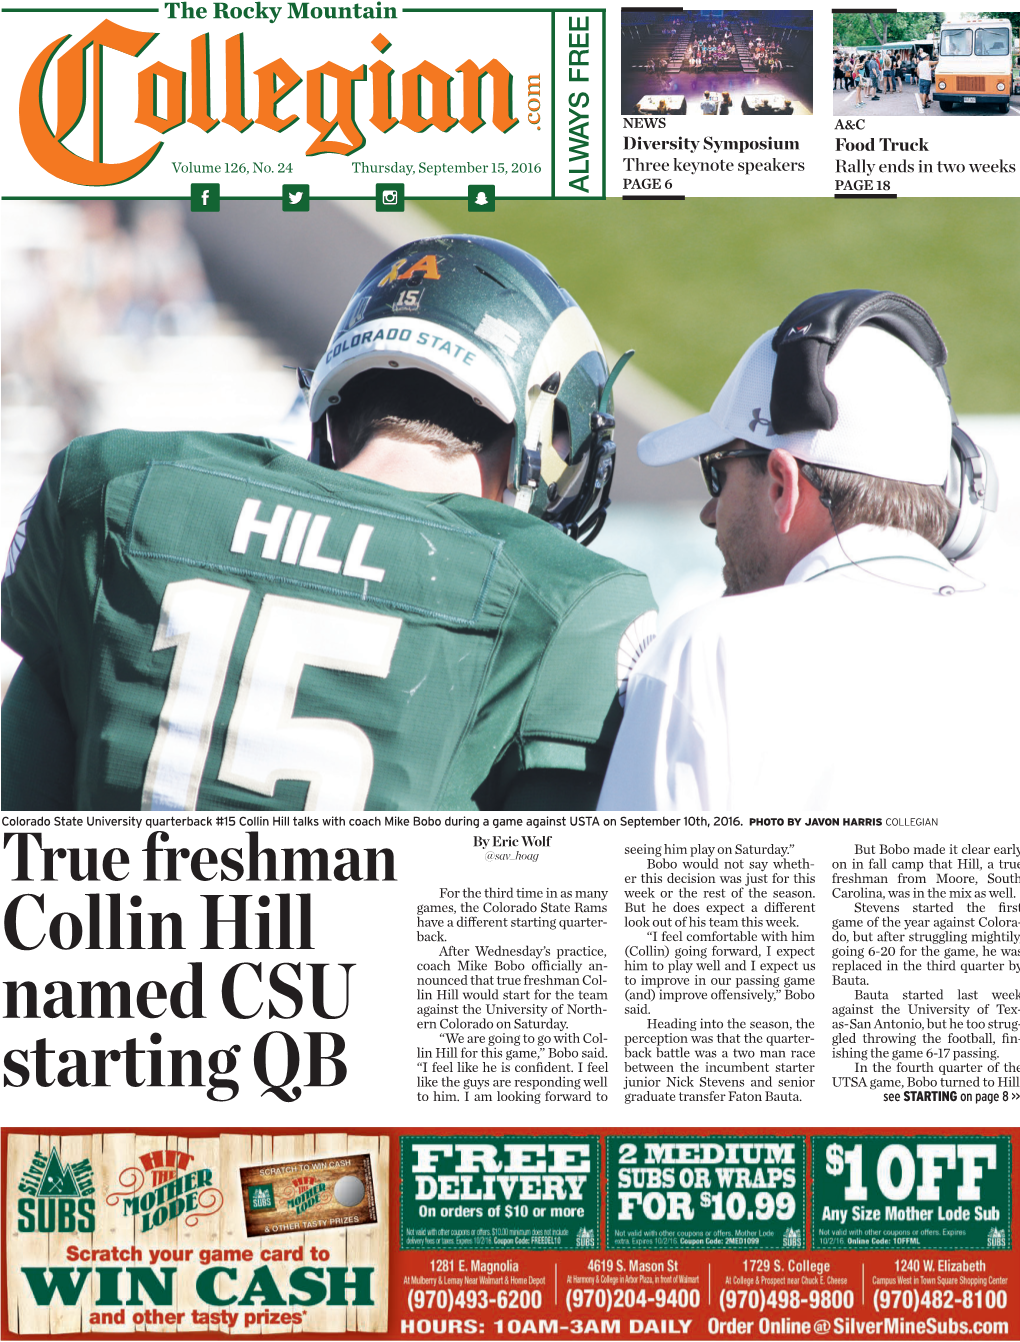 Collin Hill Named CSU Starting QB